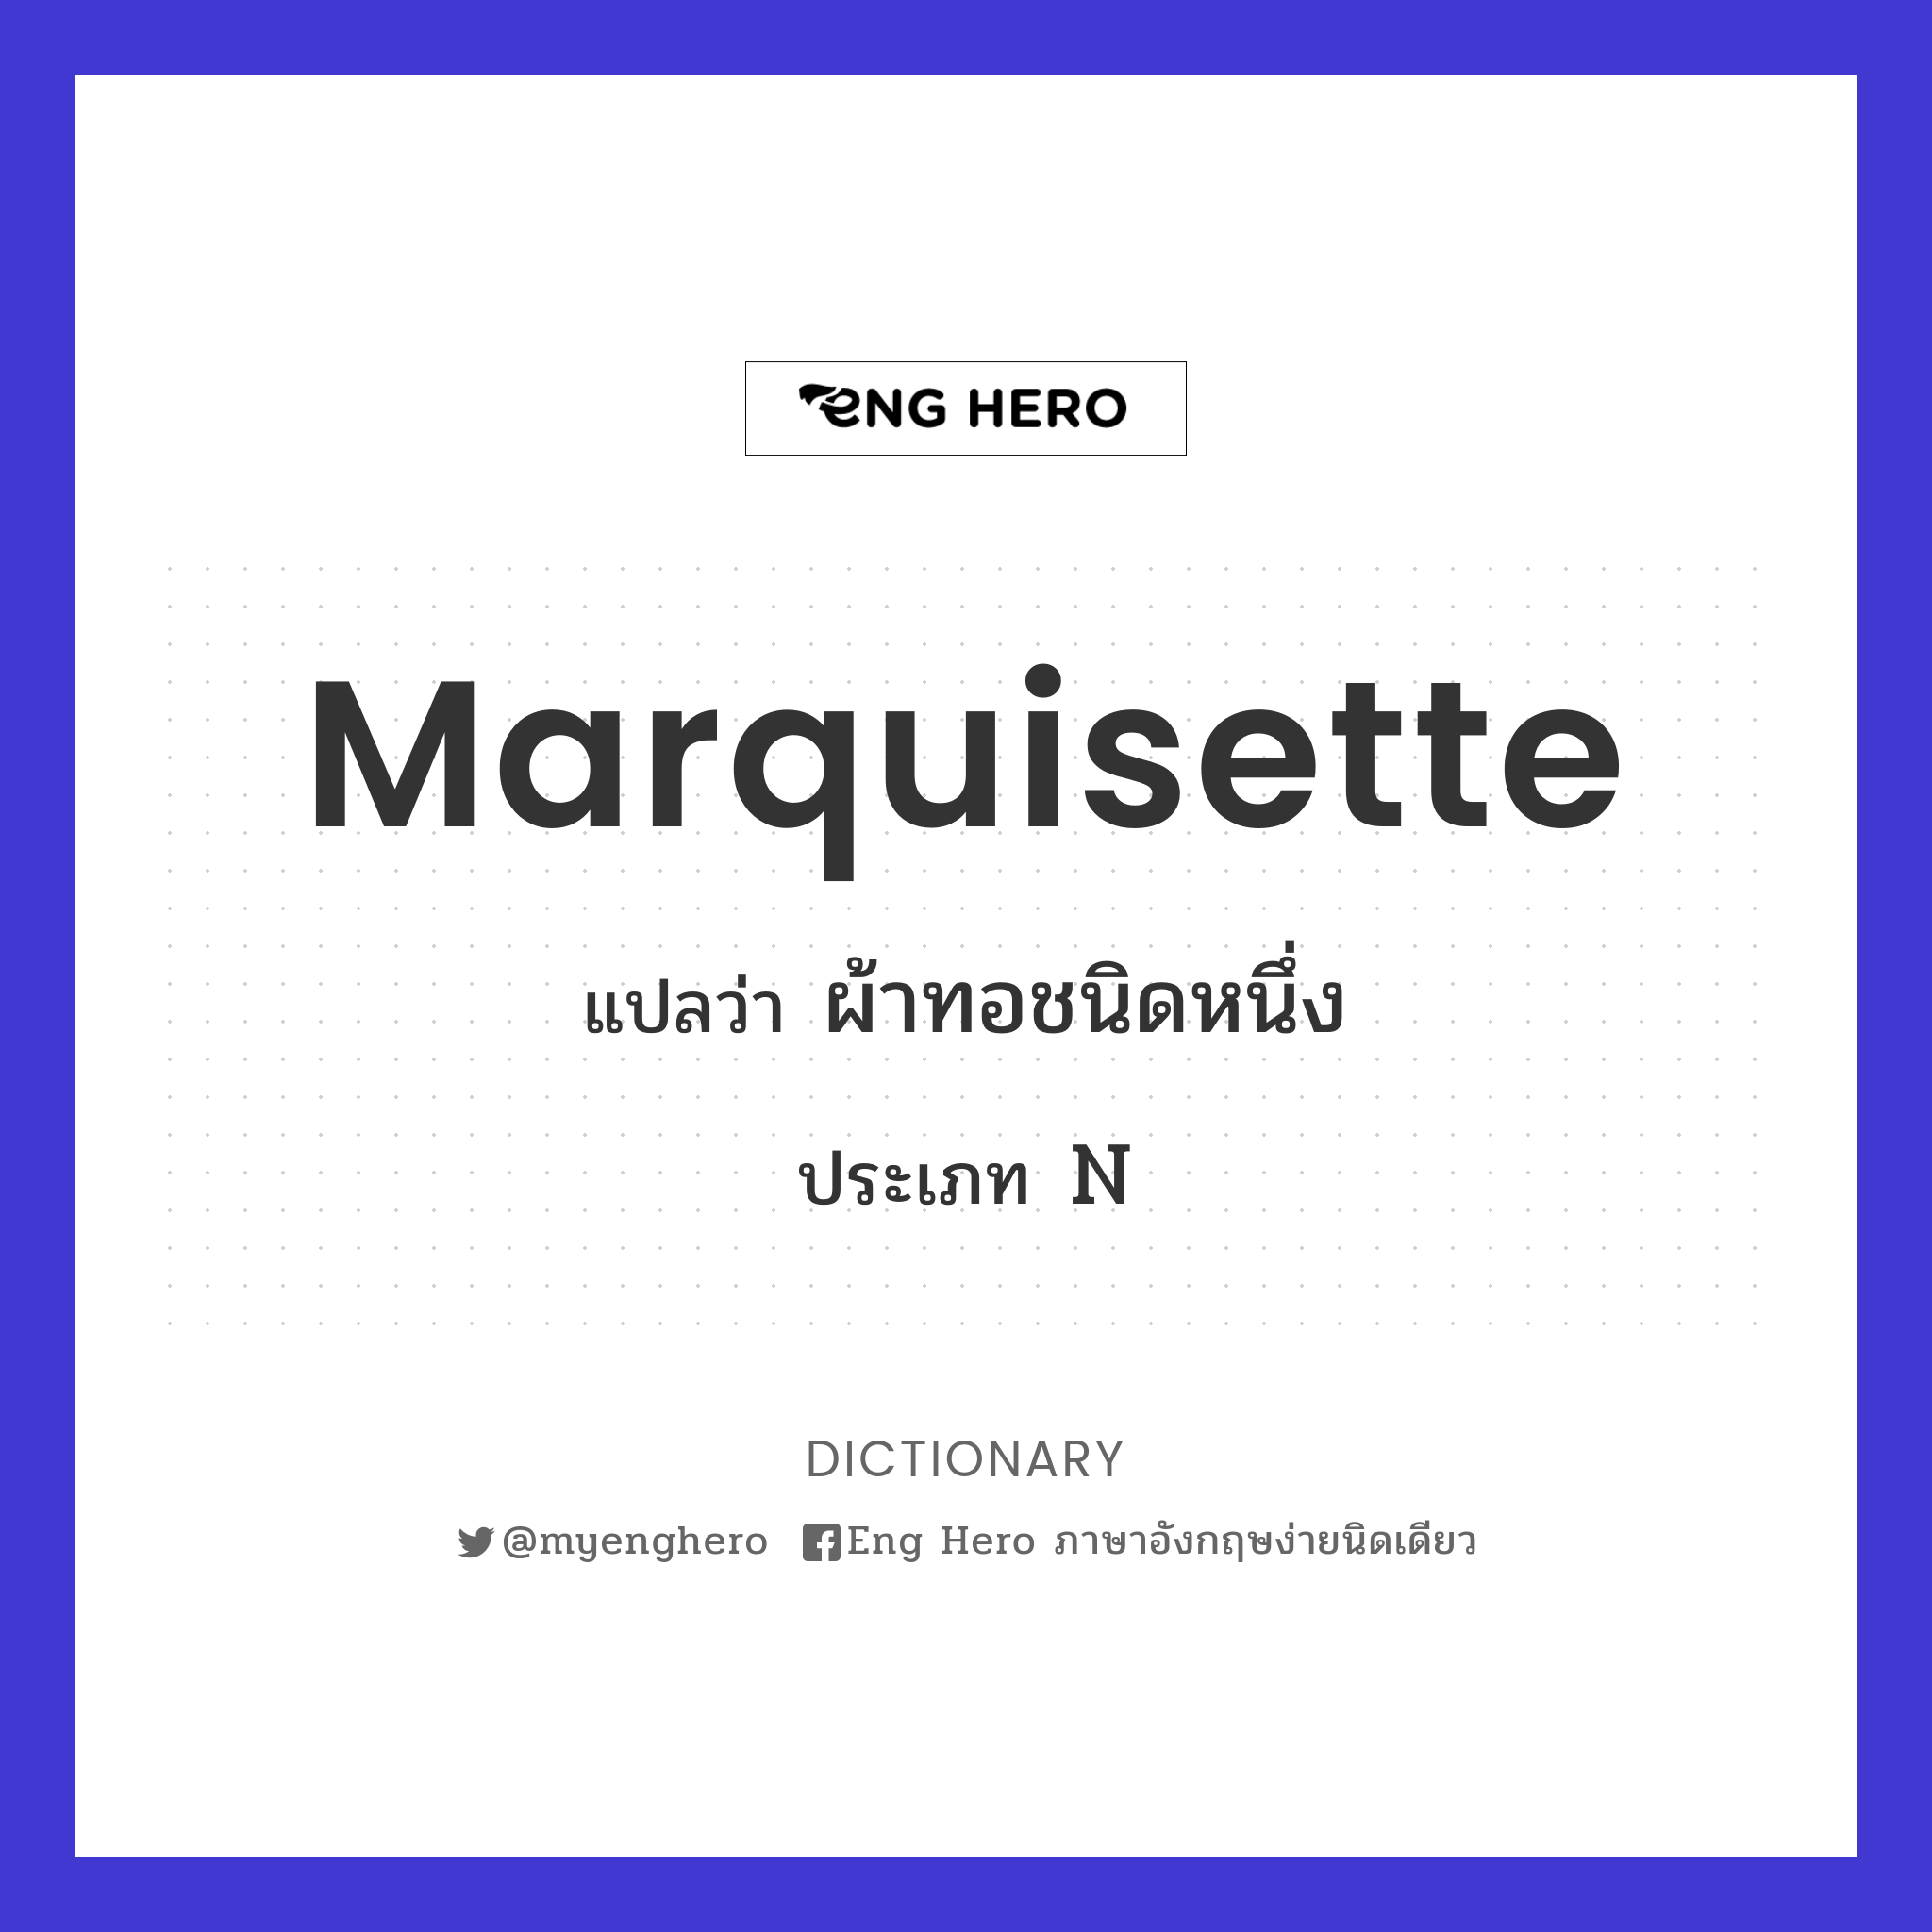 Marquisette แปลว่า ผ้าทอชนิดหนึ่ง | Eng Hero เรียนภาษาอังกฤษ ออนไลน์ ฟรี